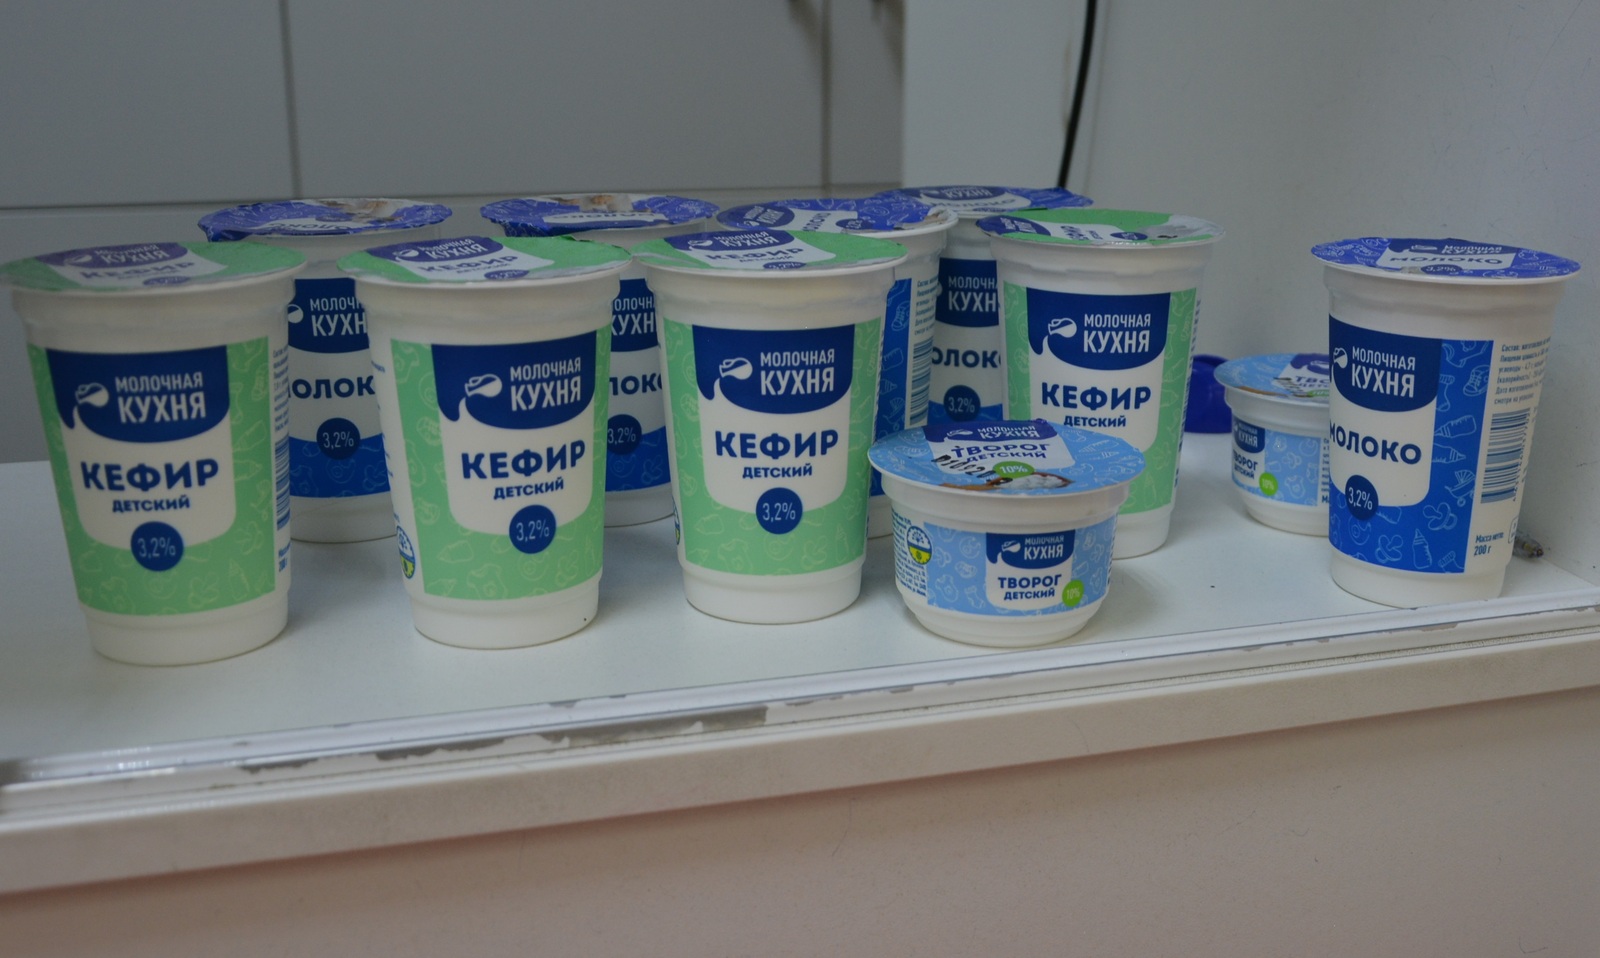 В МФЦ Башкирии начали принимать заявления на получение продуктов «Молочной кухни»